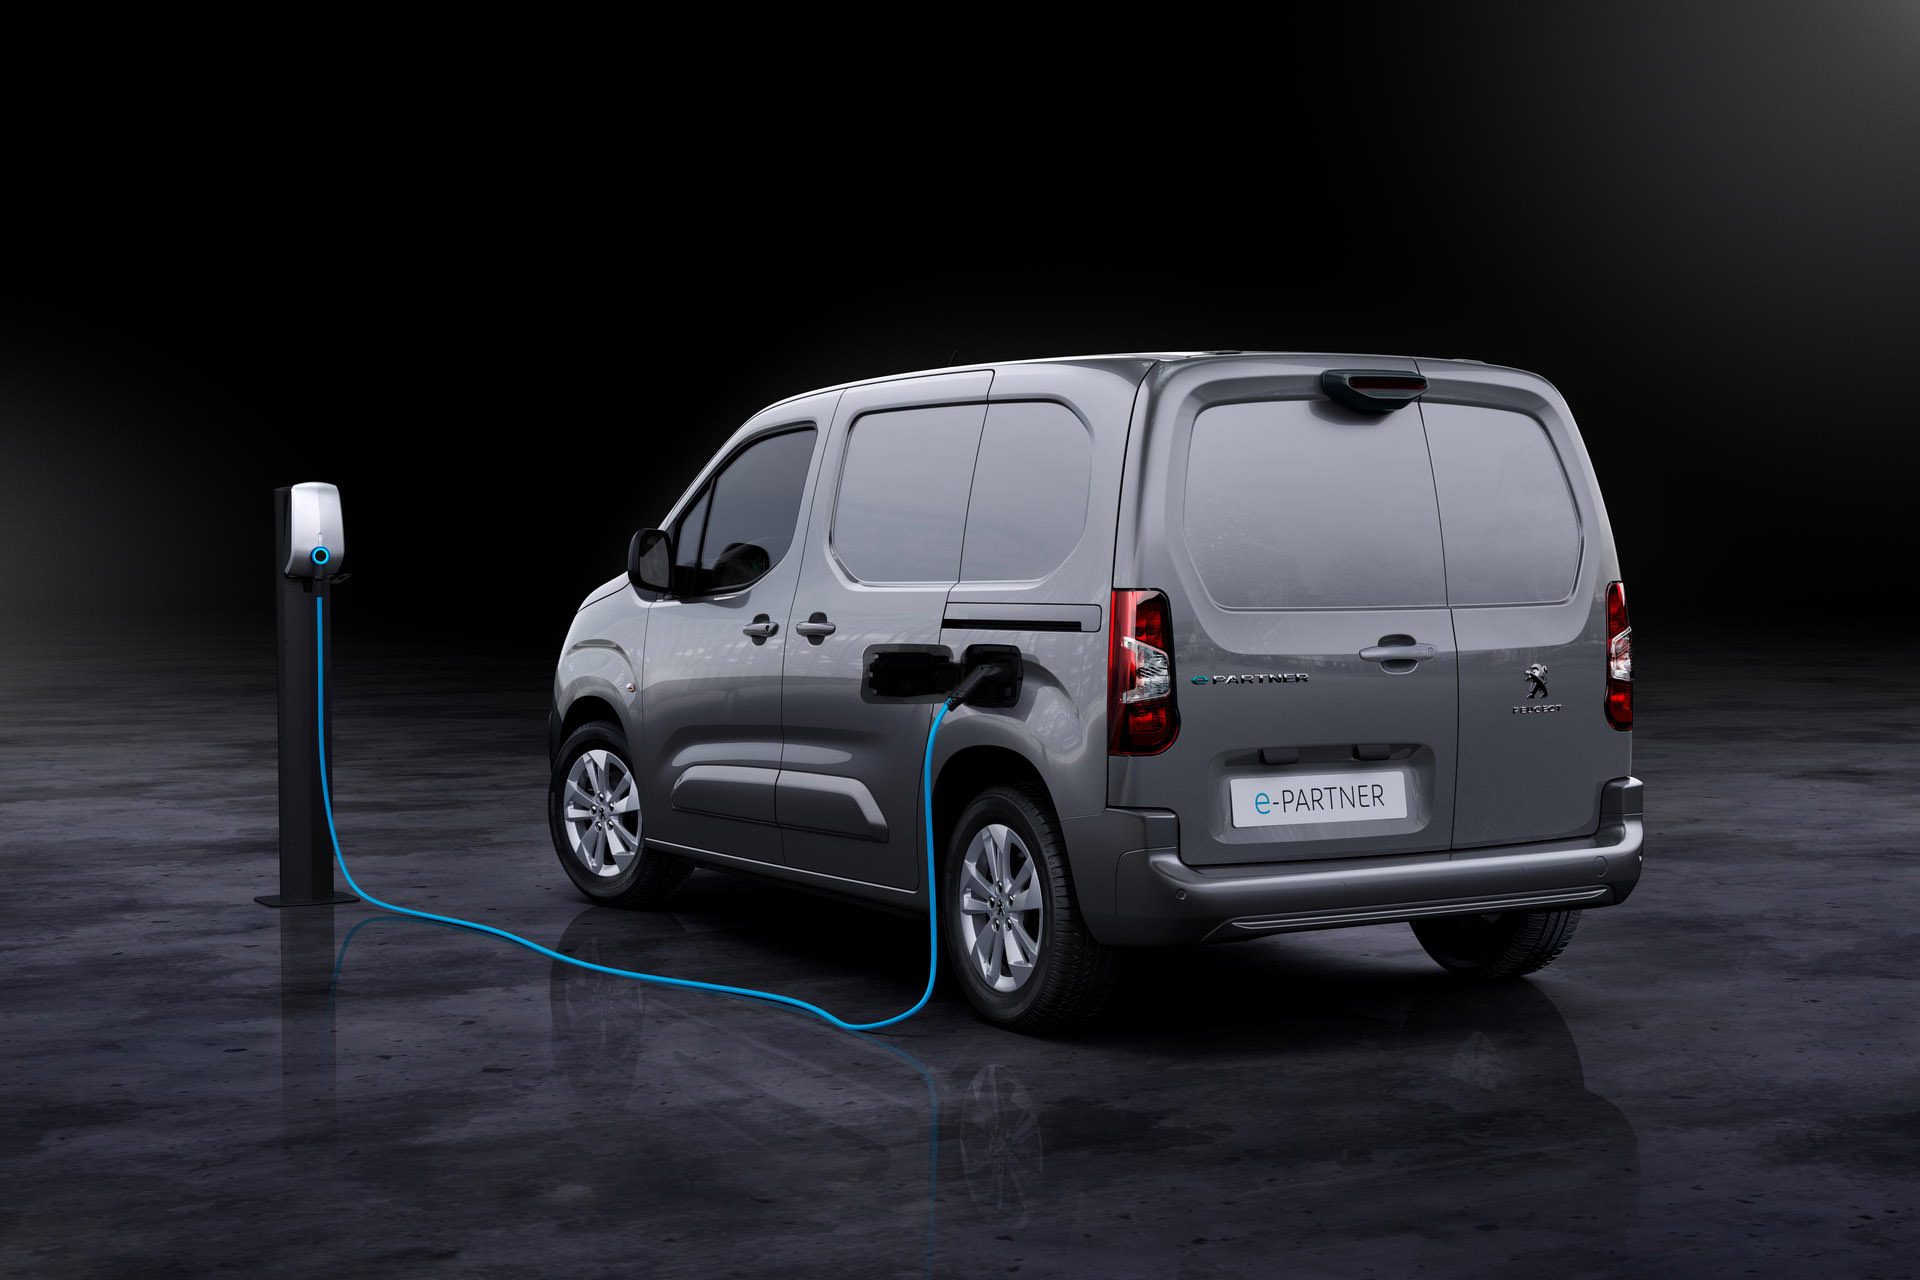 نمای عقب ون برقی پژو ای-پارتنر / 2021 Peugeot e-Partner Electric van در کنار شارژر دیواری